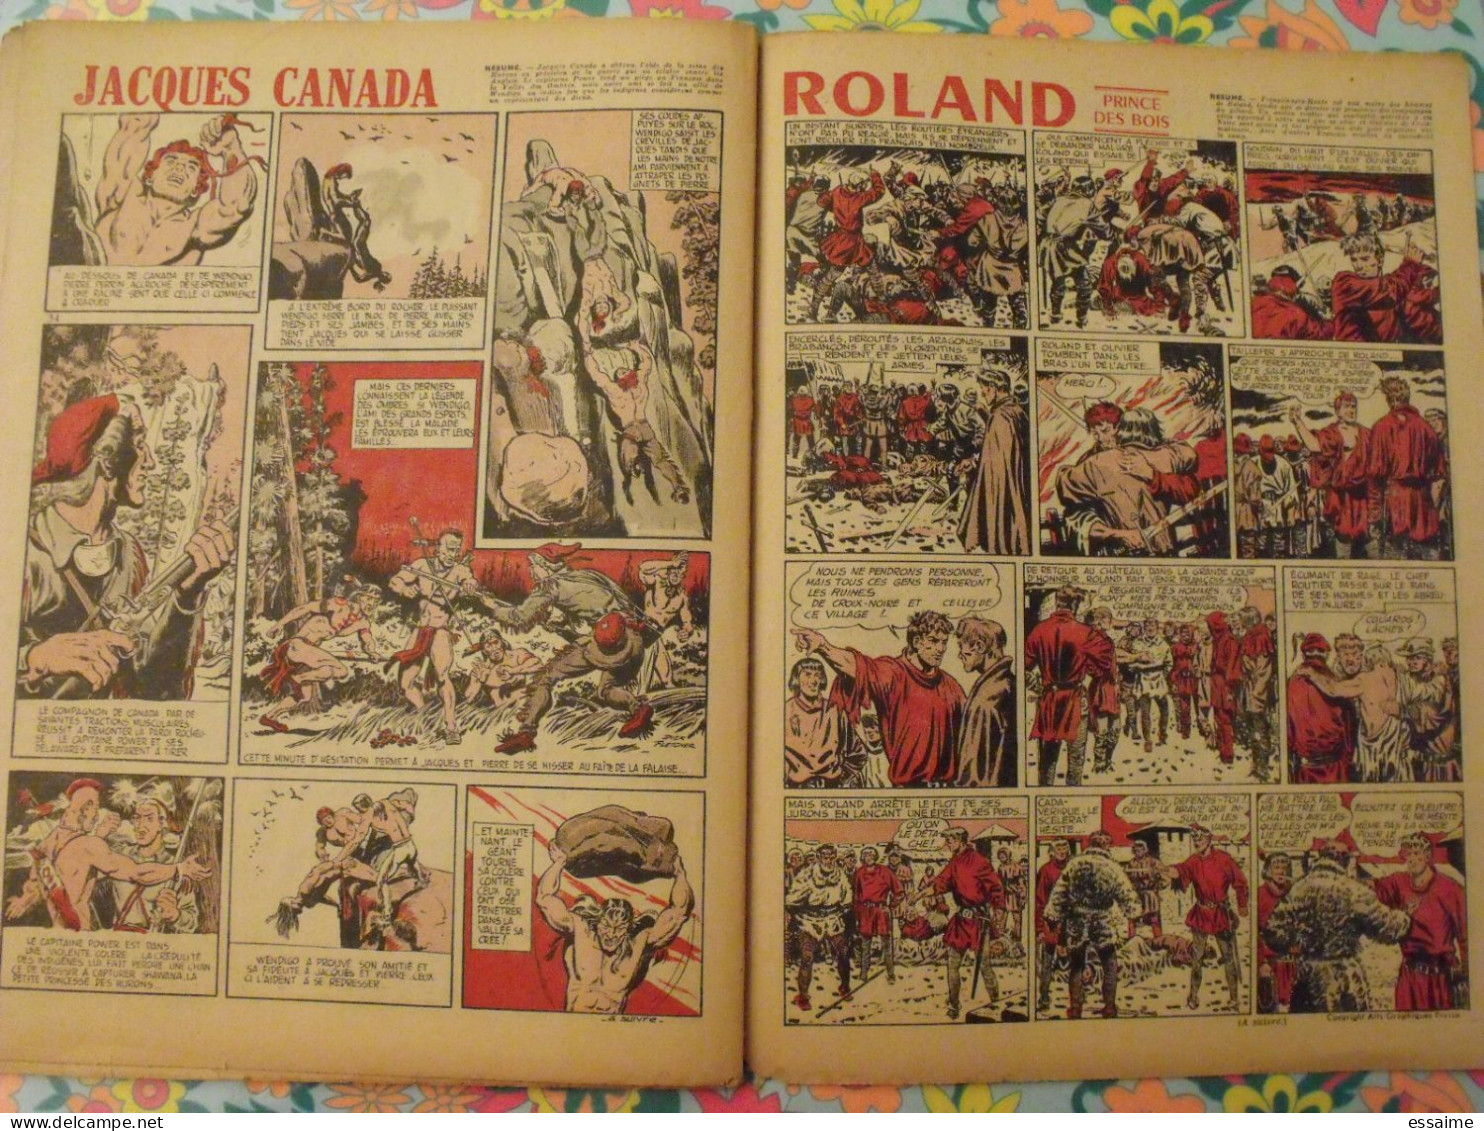 9 numéros de Coq Hardi de 1951. Sitting Bull, jacques canada, roland, marco polo, père noël. A redécouvrir